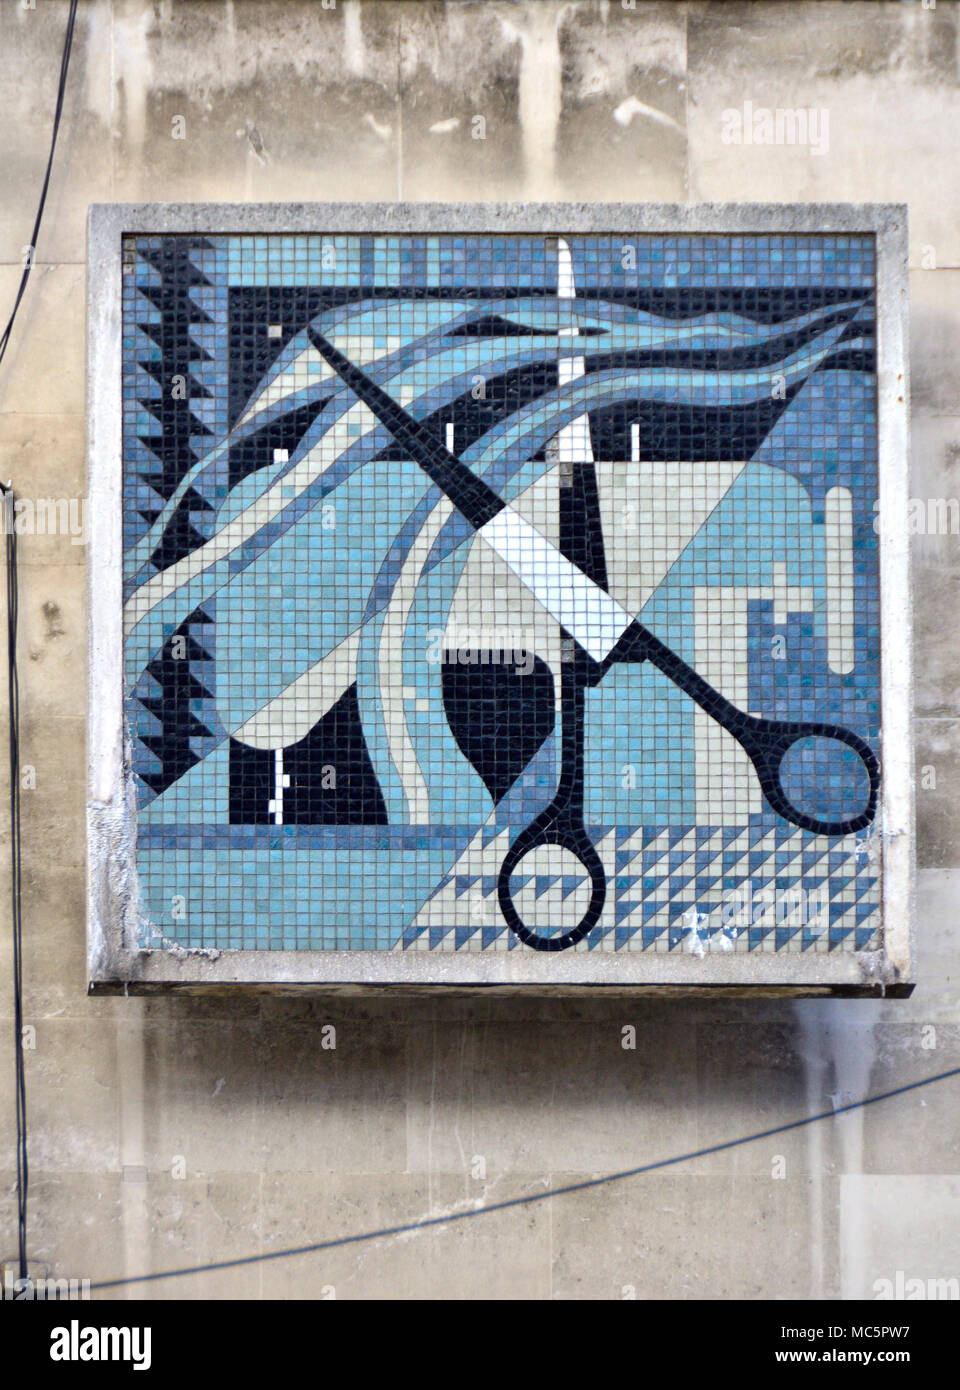 London, England, UK. London College Mode, John Prince's Street/Oxford Street. Detail der Fassade - Mosaik von Schere und Nähmaschine Stockfoto